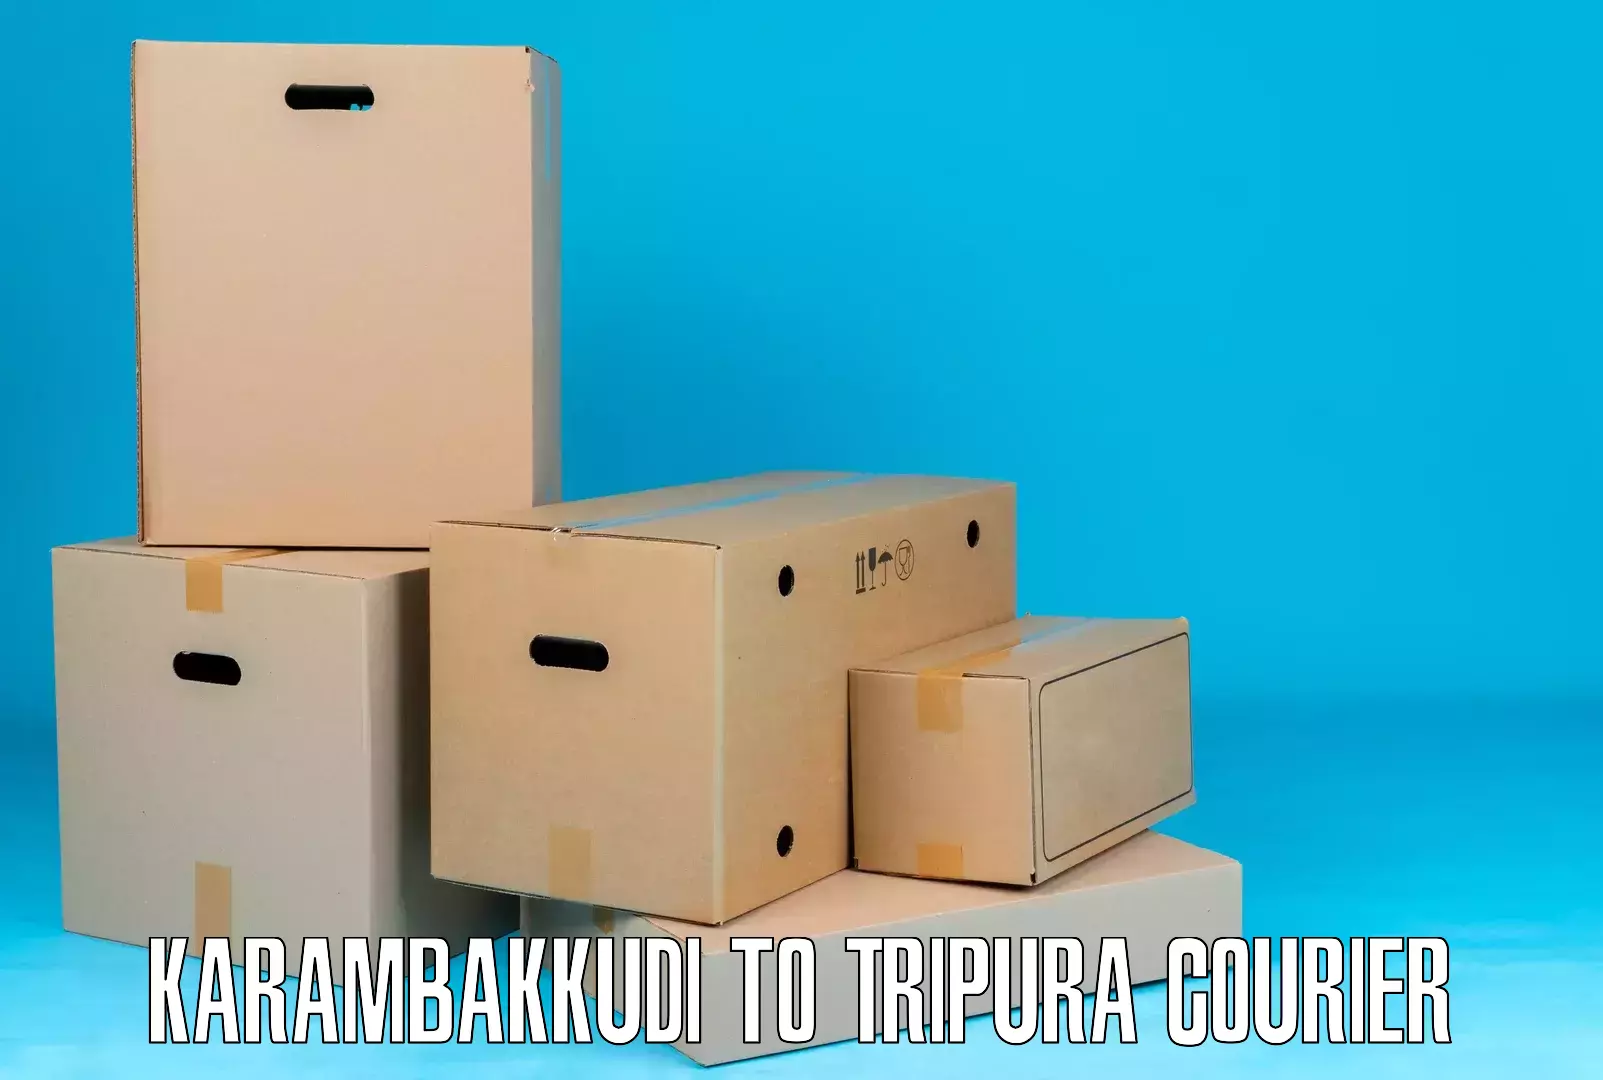 Nationwide delivery network Karambakkudi to IIIT Agartala